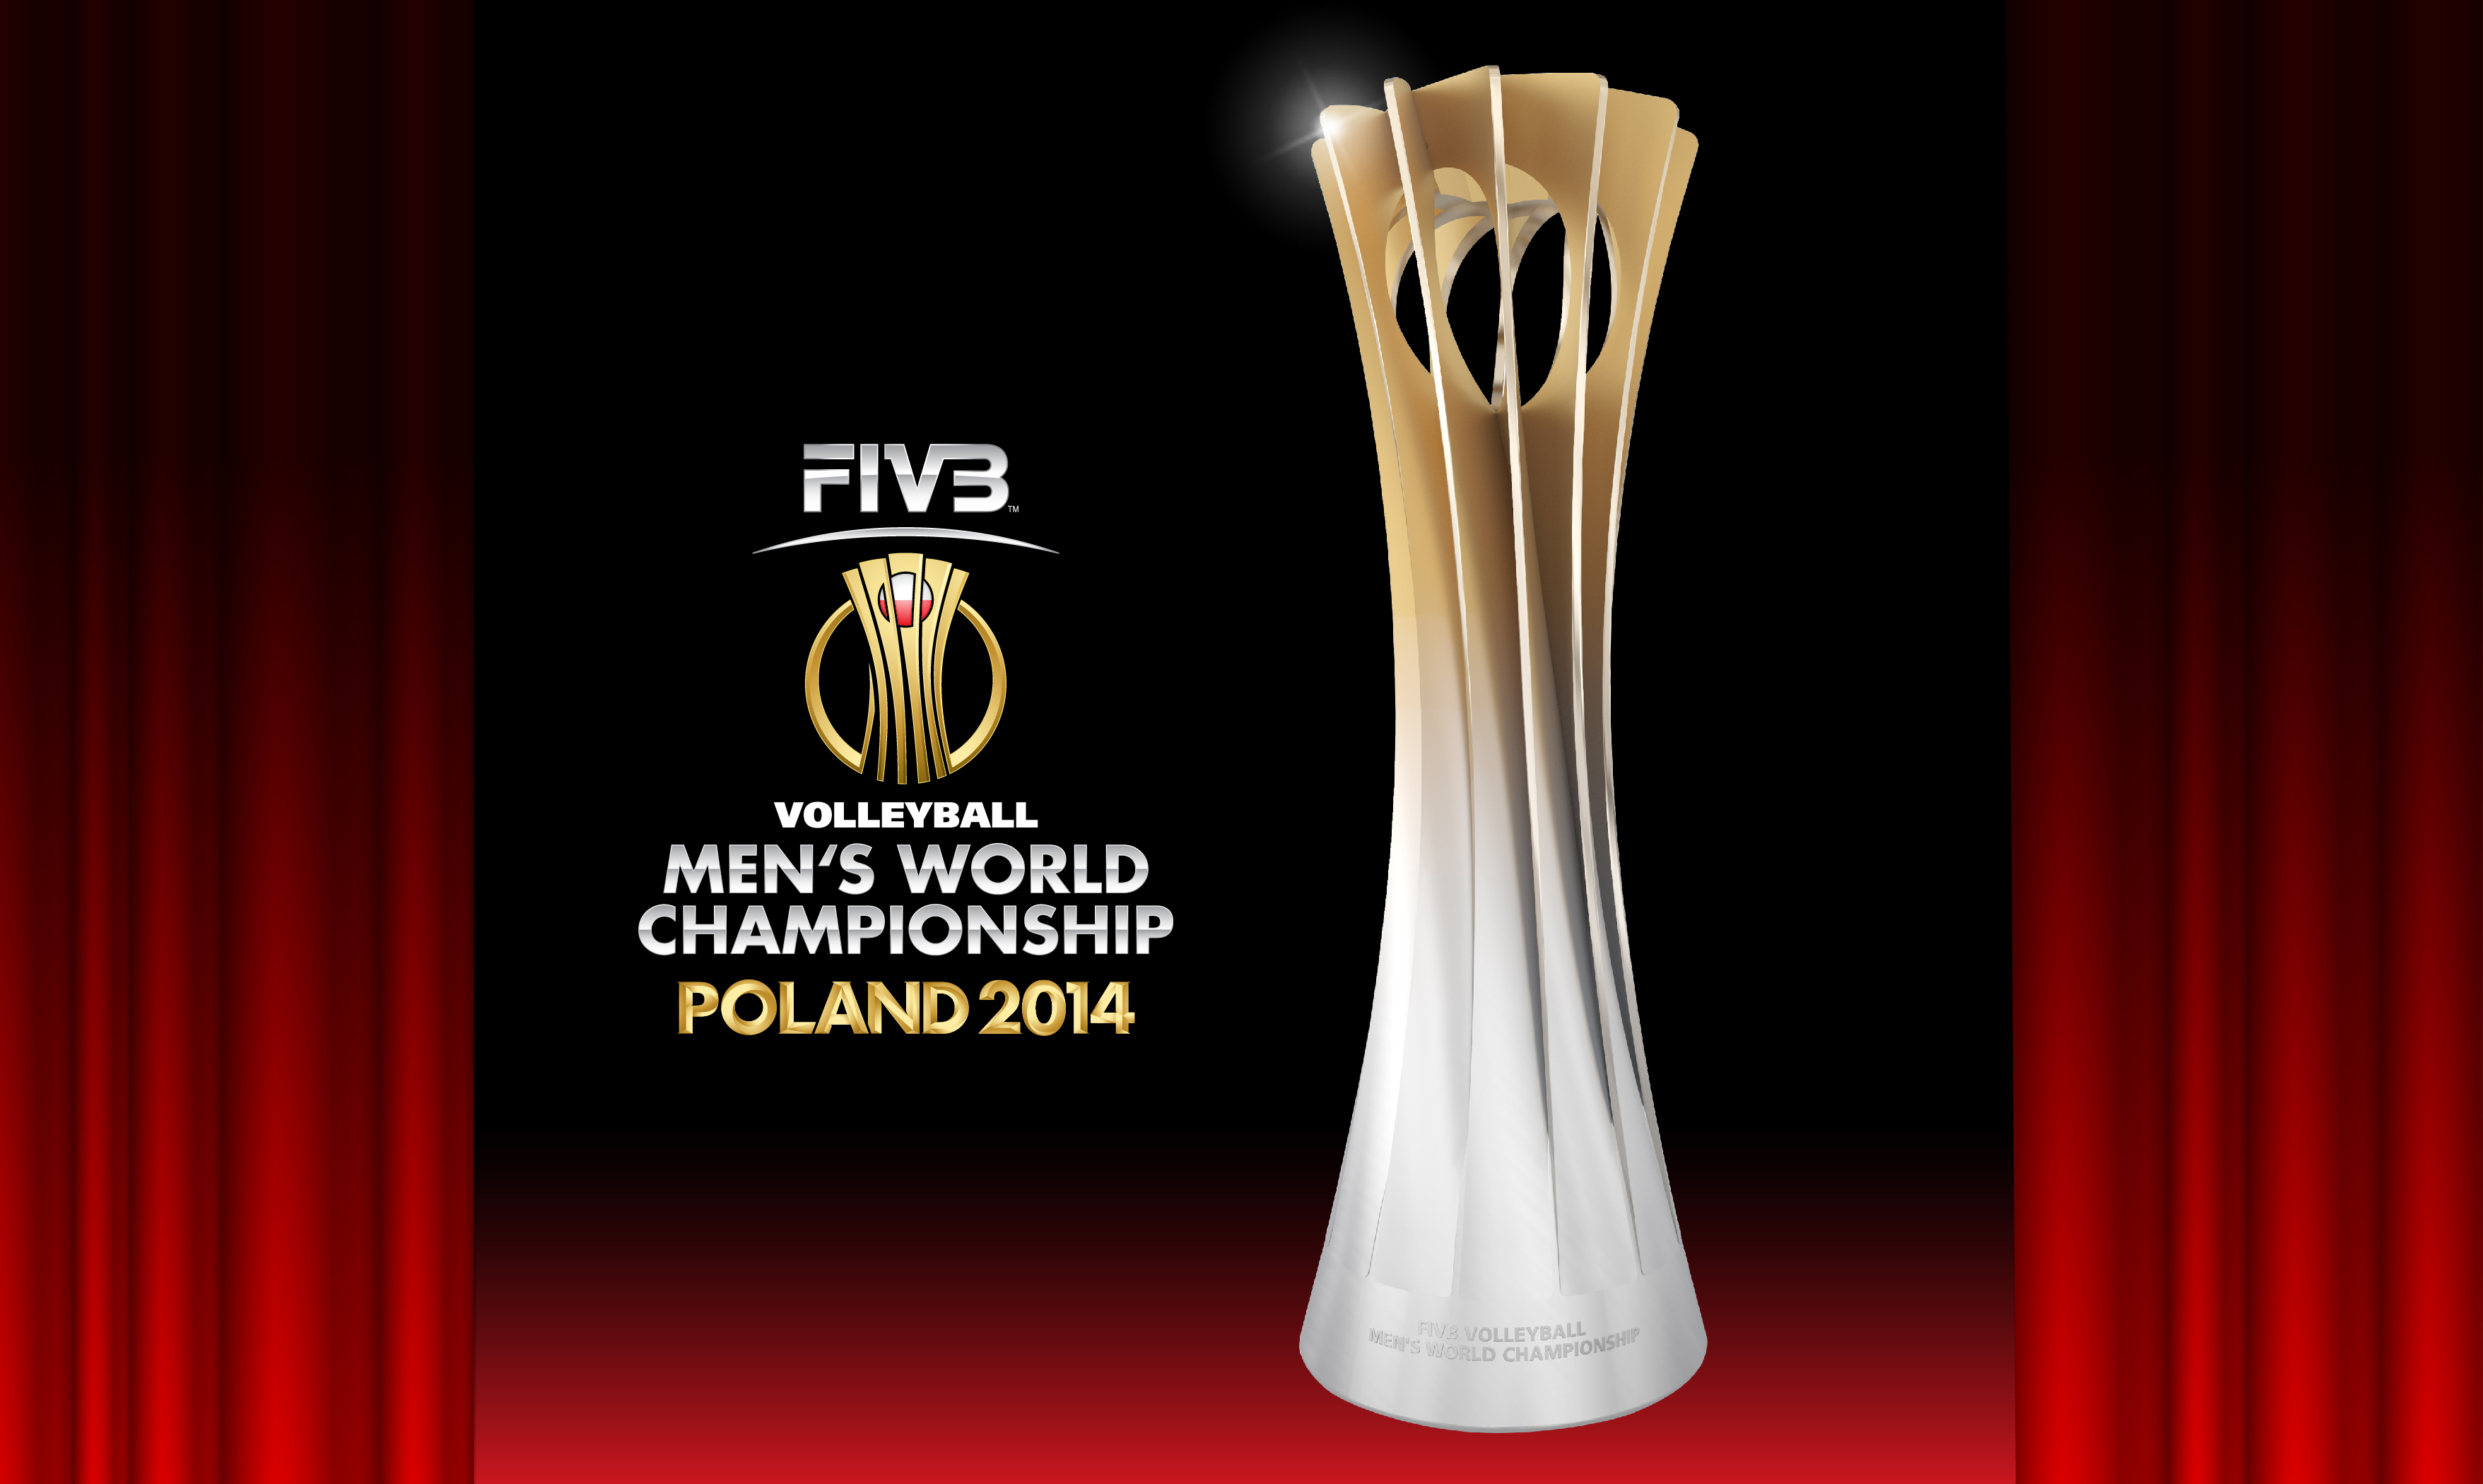 FIVB Men's World Championship Poland 2014